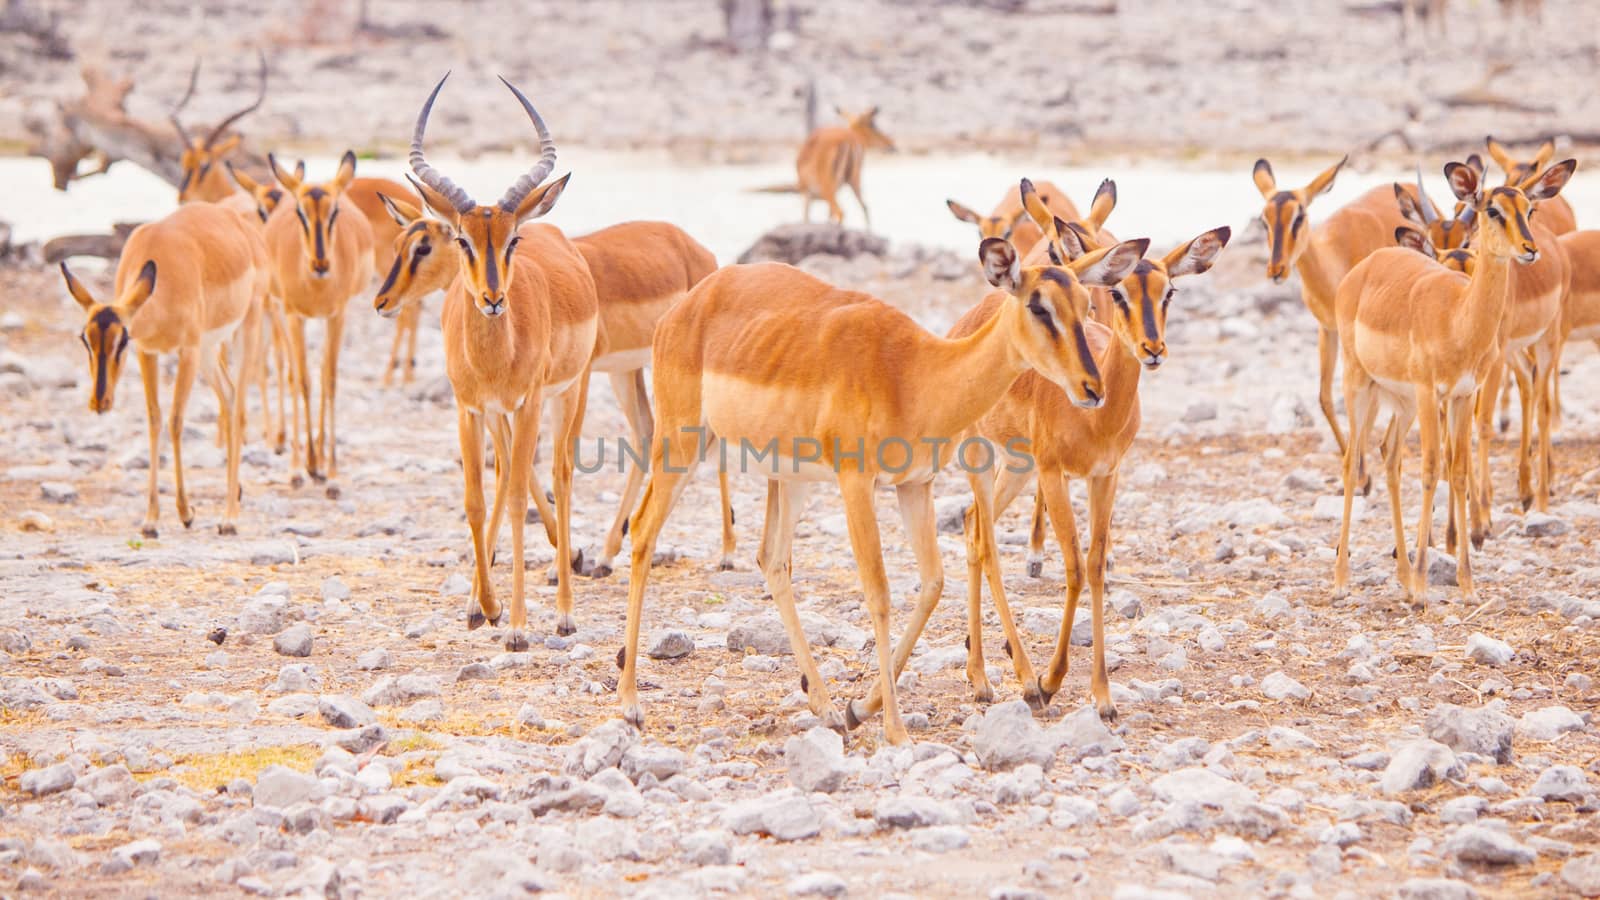 Herd of impalas at waterhole, Etosha National Park, Namibia, Africa